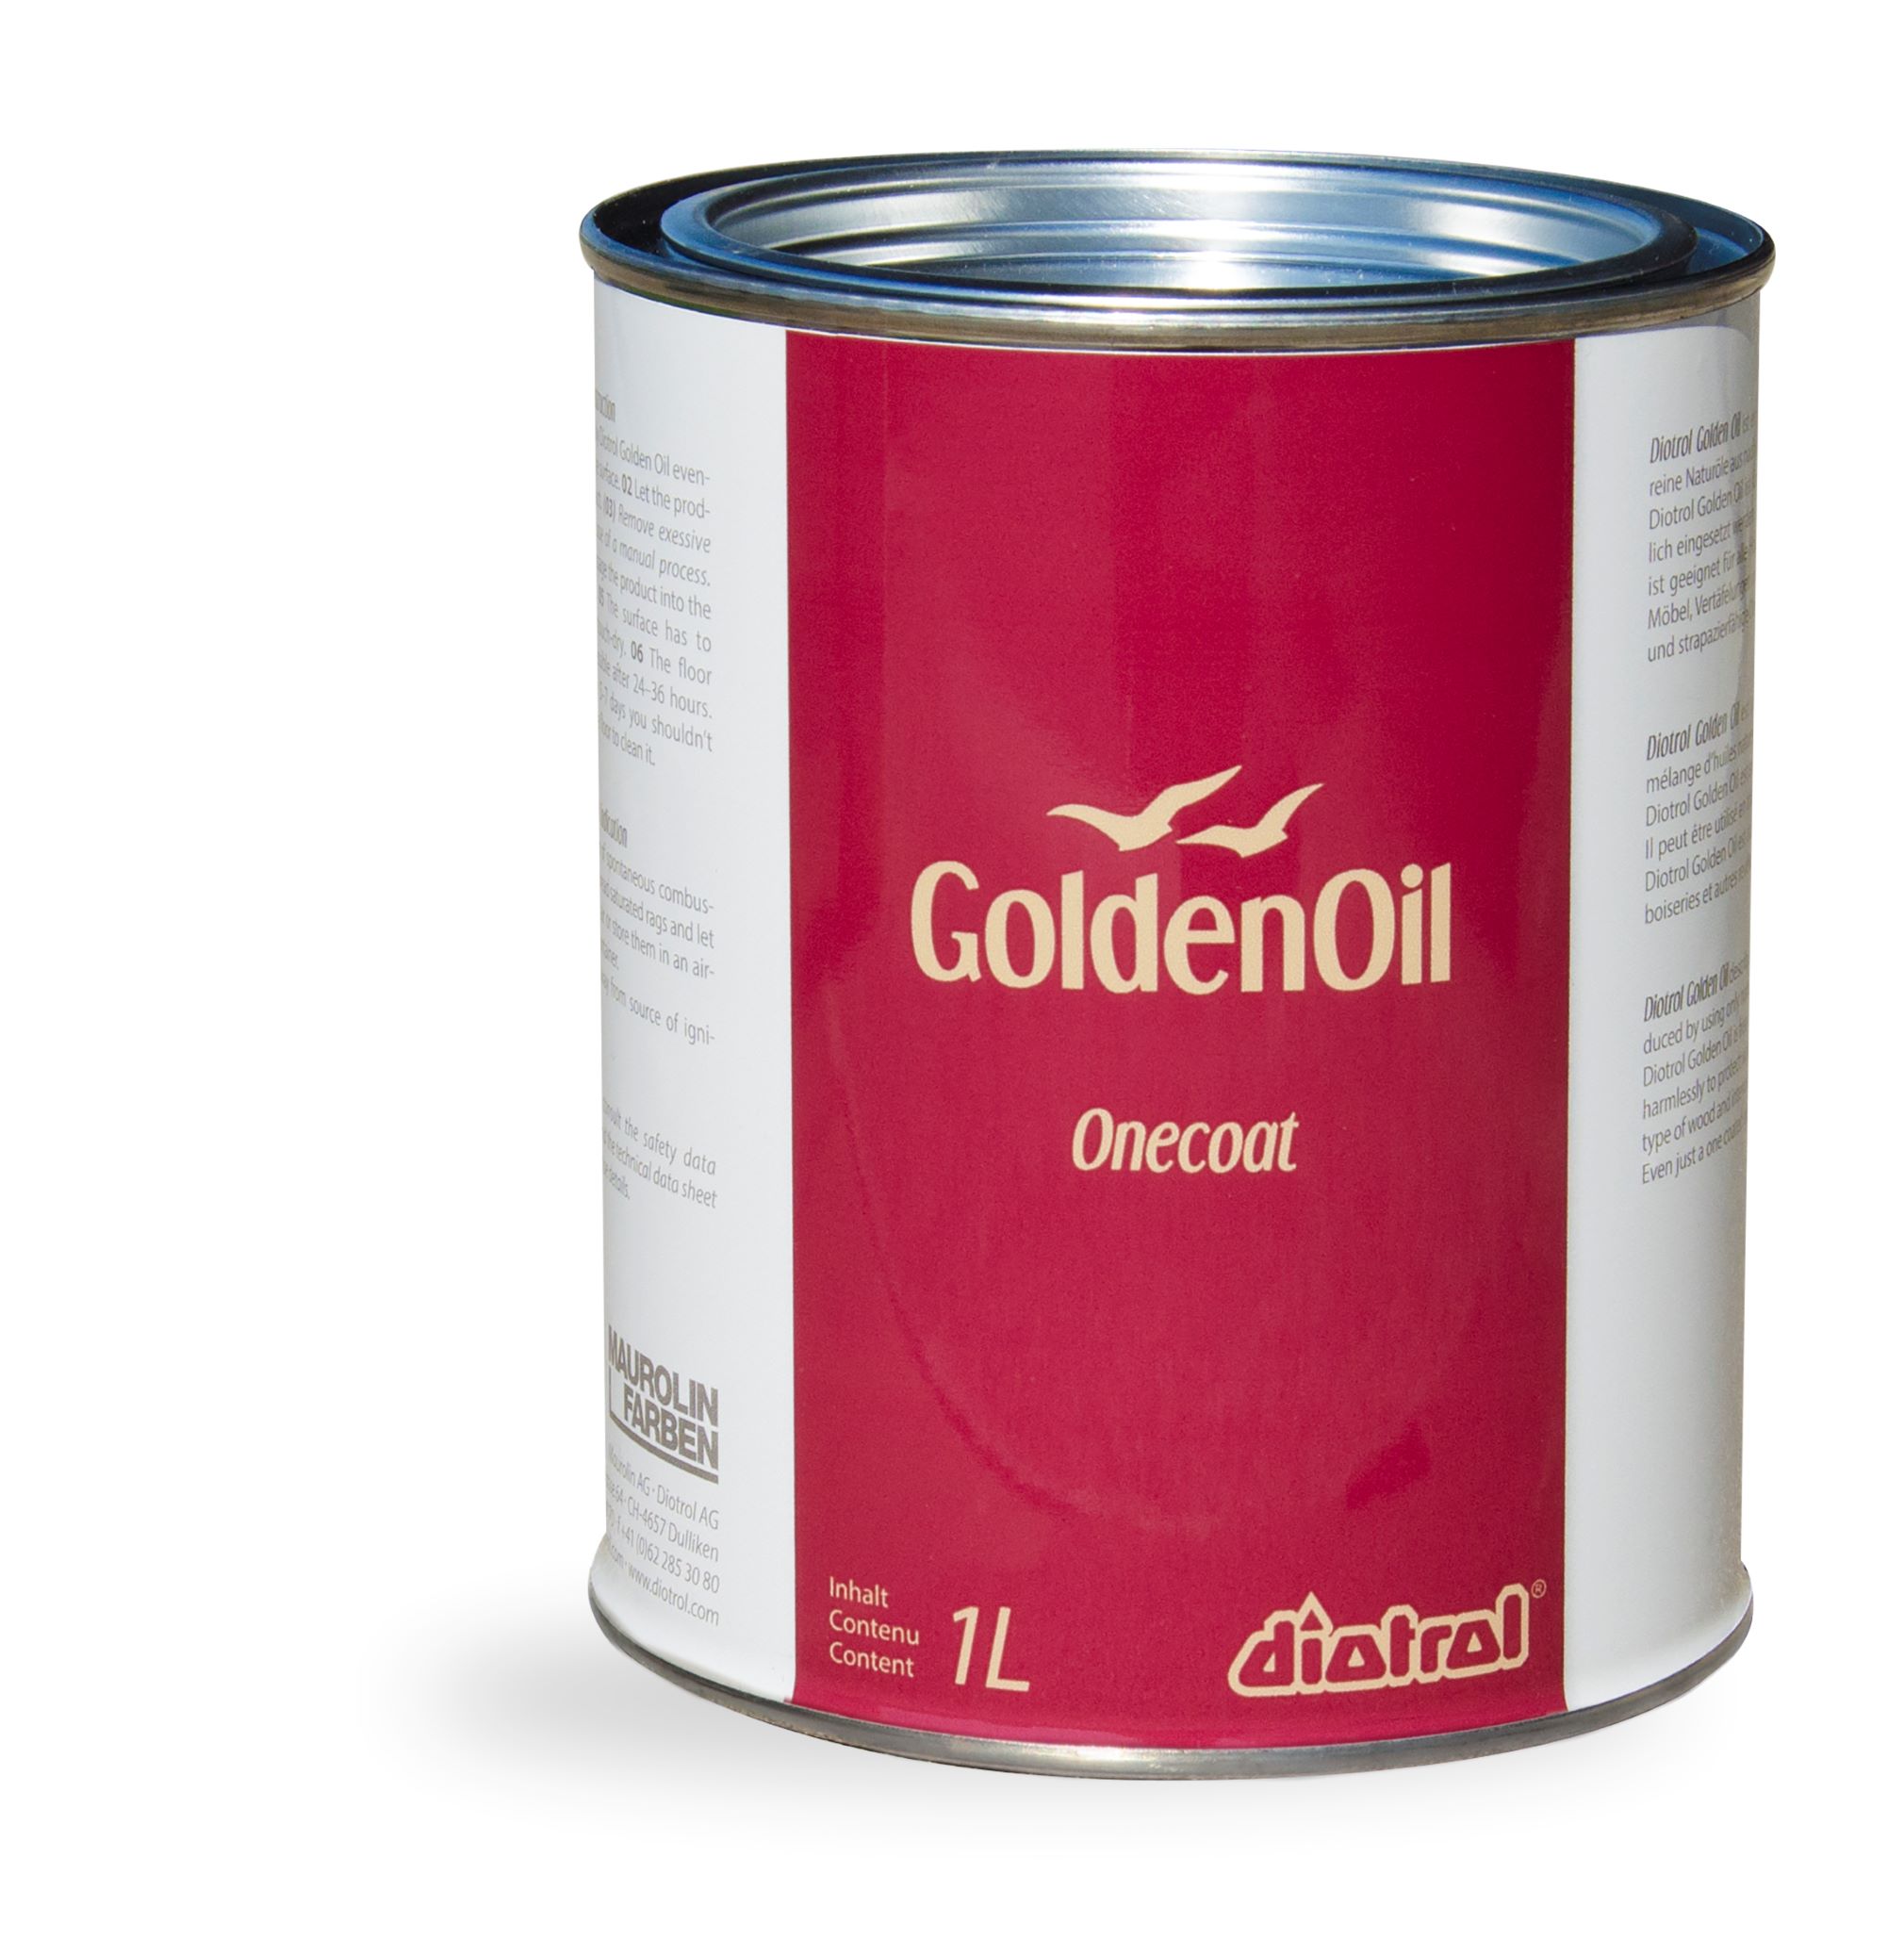 Diotrol Golden Oil Onecoat